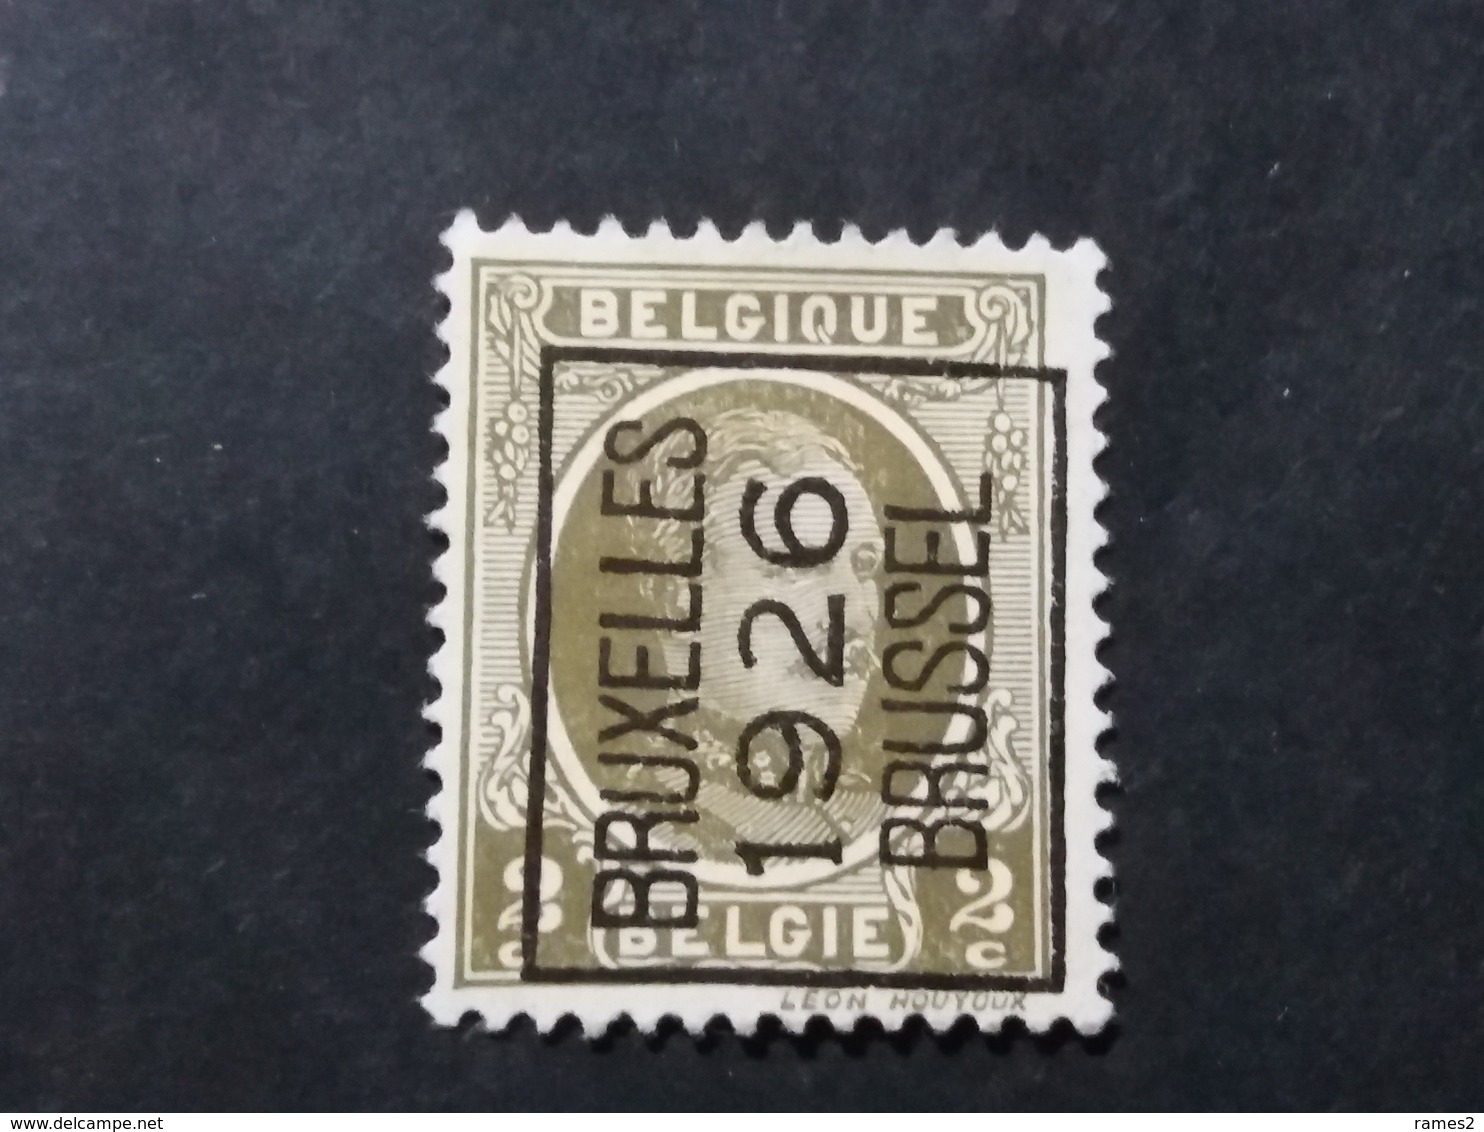 Belgique > Préoblitérés > Typos 1922-31 (Houyoux) - Typo Precancels 1922-31 (Houyoux)